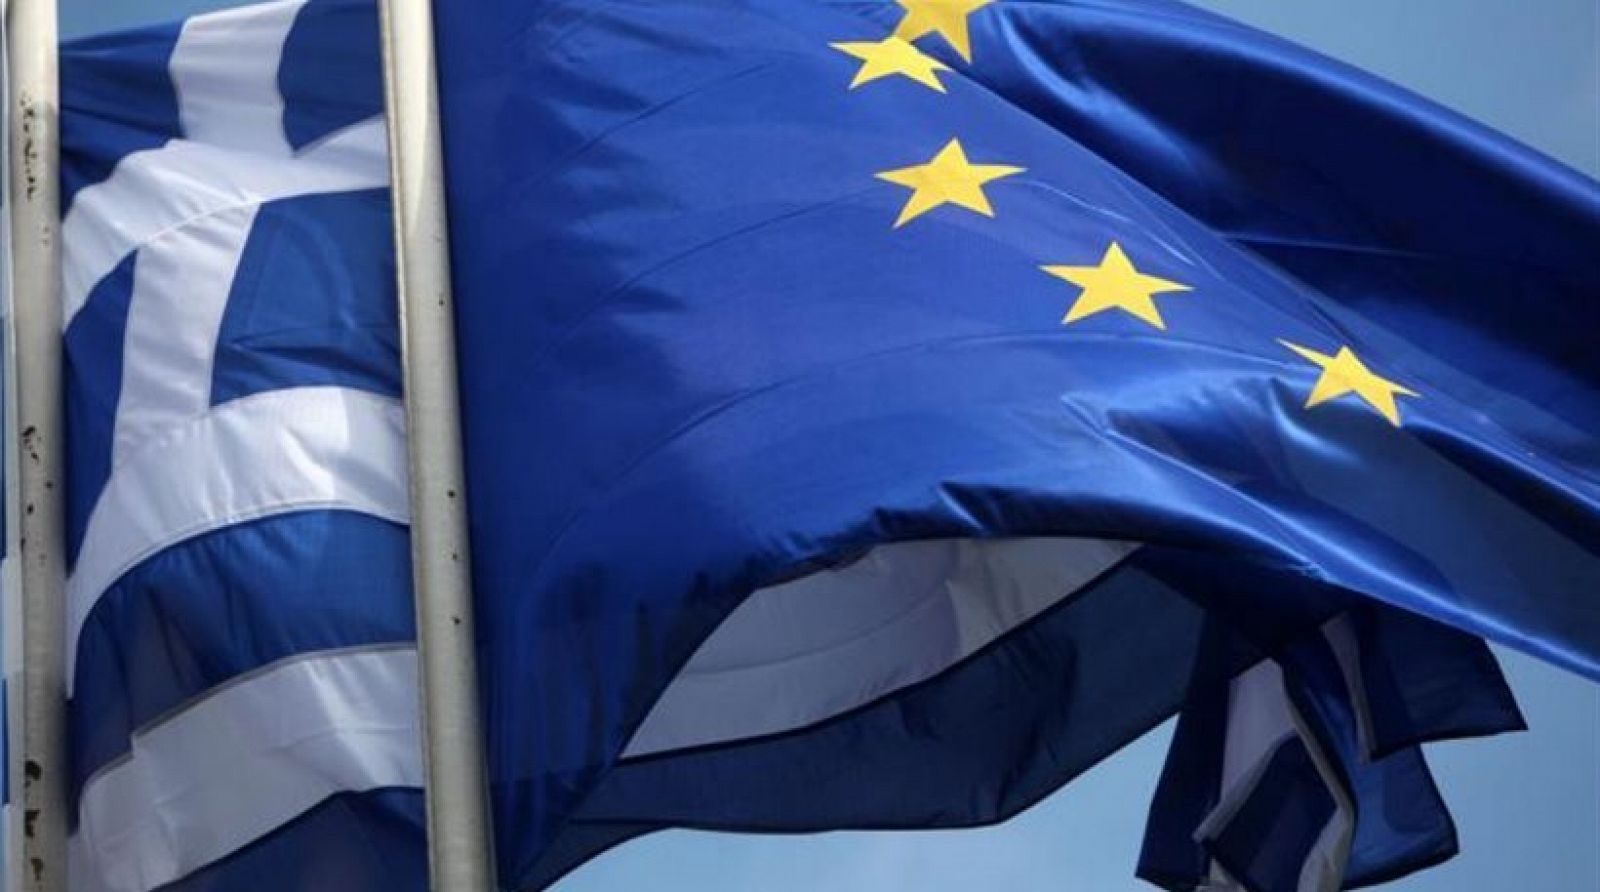 Banderas de Grecia y la UE, enlazadas